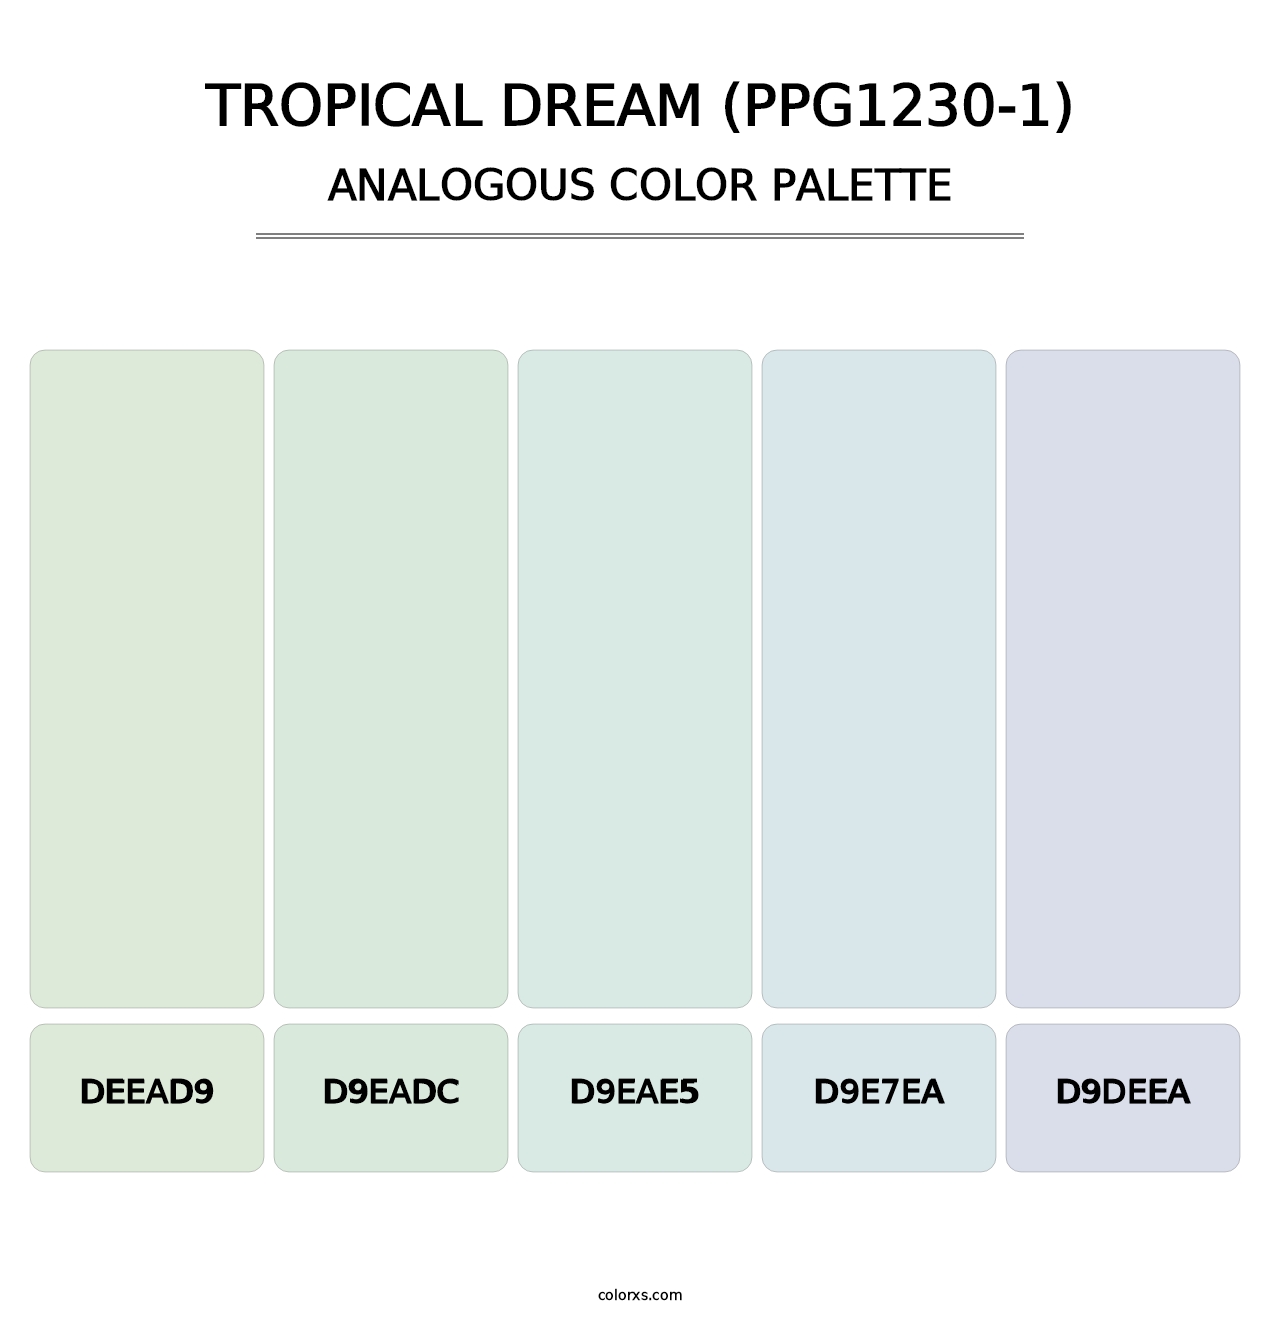 Tropical Dream (PPG1230-1) - Analogous Color Palette